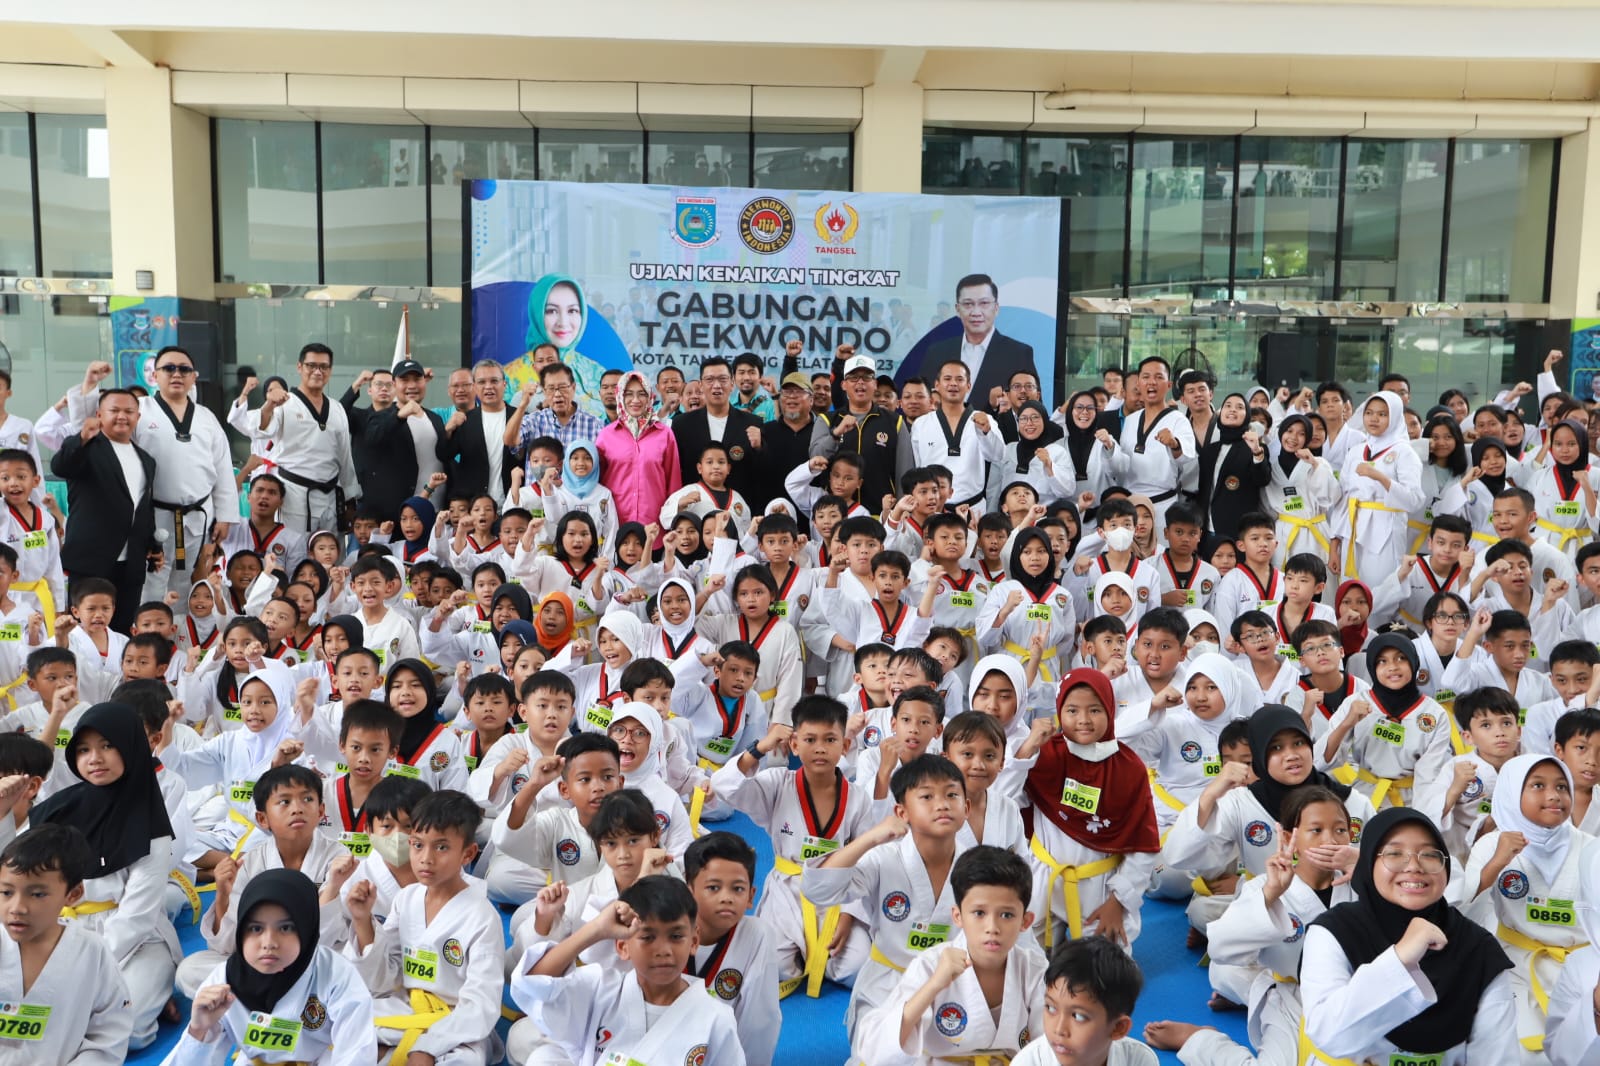 Ribuan Peserta Ikuti Uji Kenaikan Tingkat Gabungan Taekwondo Indonesia